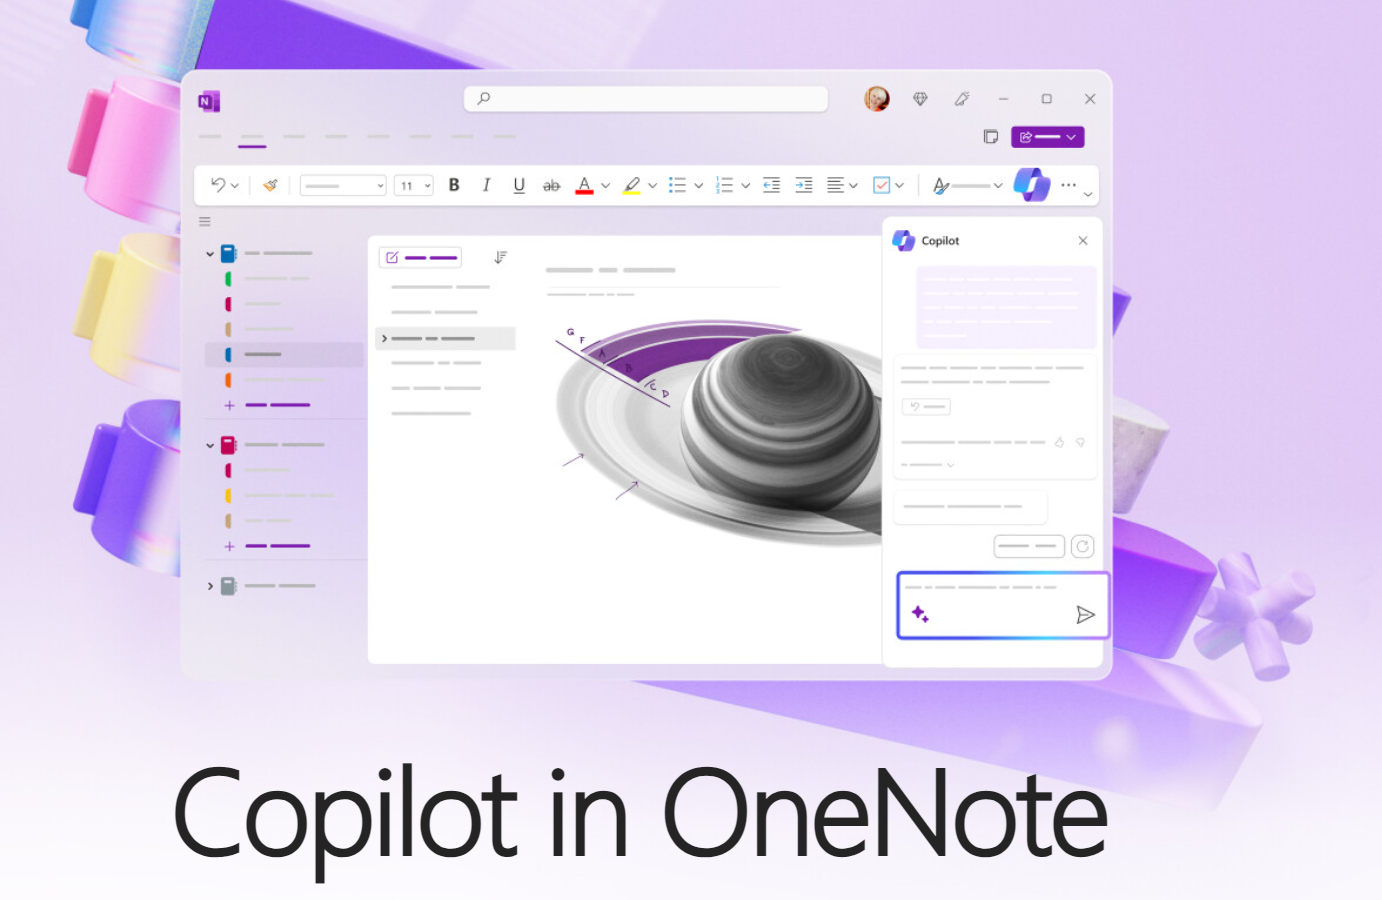 Microsoft tilføjer AI-assistenten Copilot til OneNote-appen i november